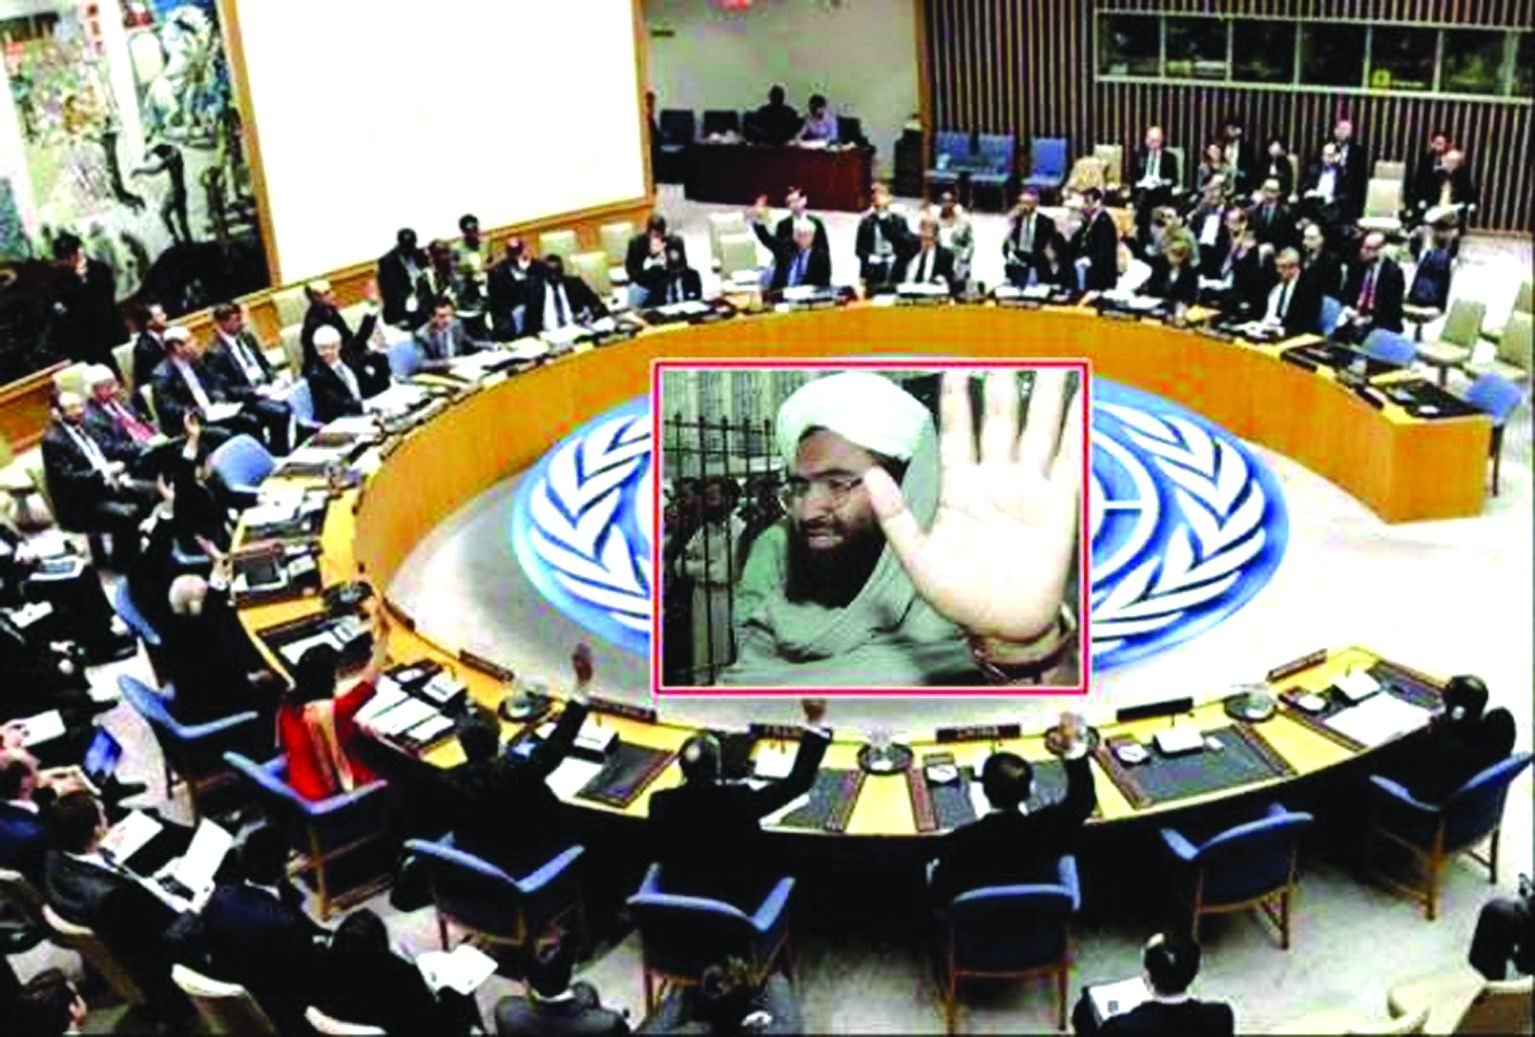 મસૂદ અઝહર સામે પ્રતિબંધ લાદવા અમેરિકાનો UN સુરક્ષા પરિષદમાં પ્રસ્તાવ